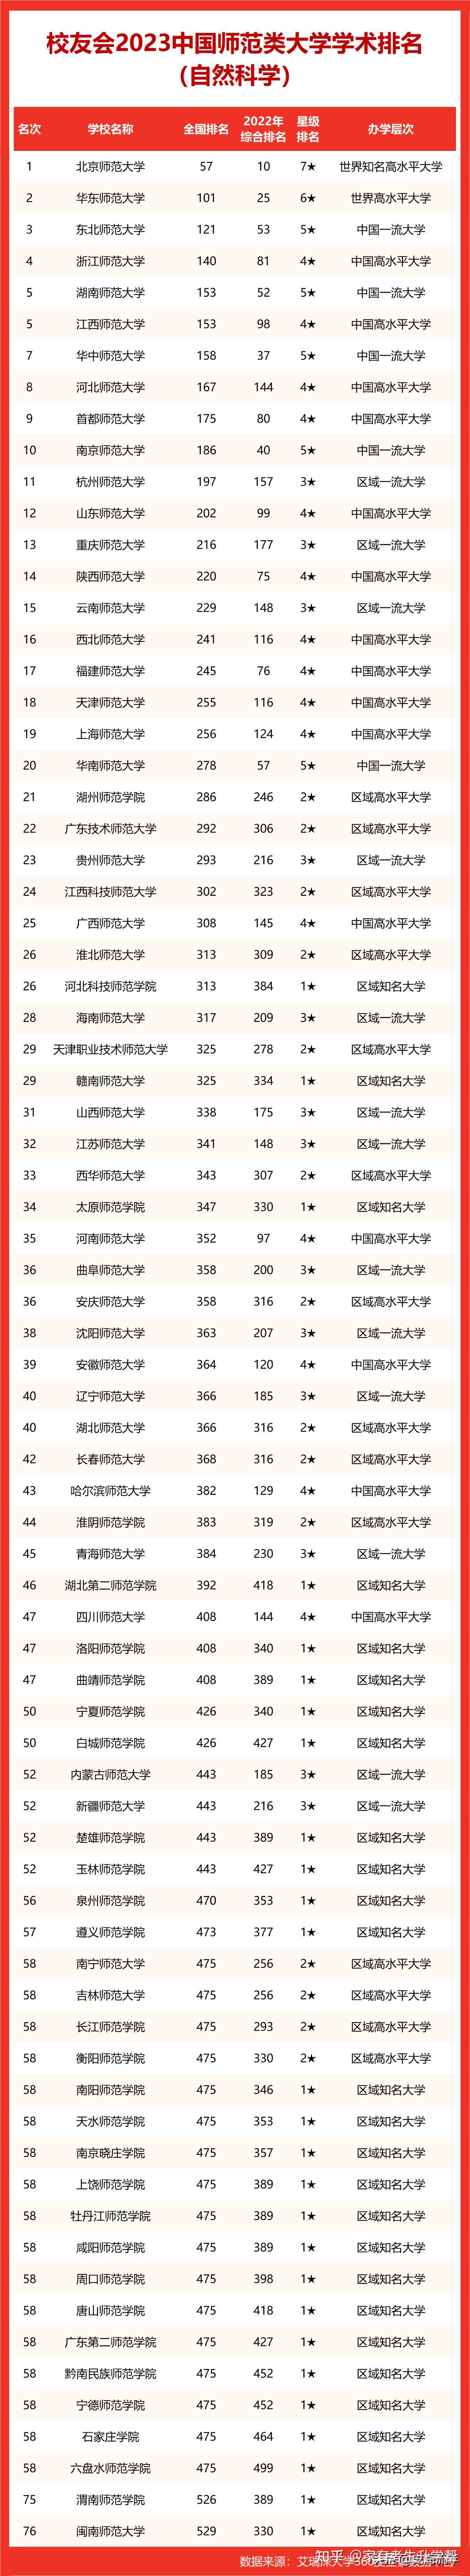 随着《软科2023年中国内地高校排行榜》隆重发布,全国高校2023年排名